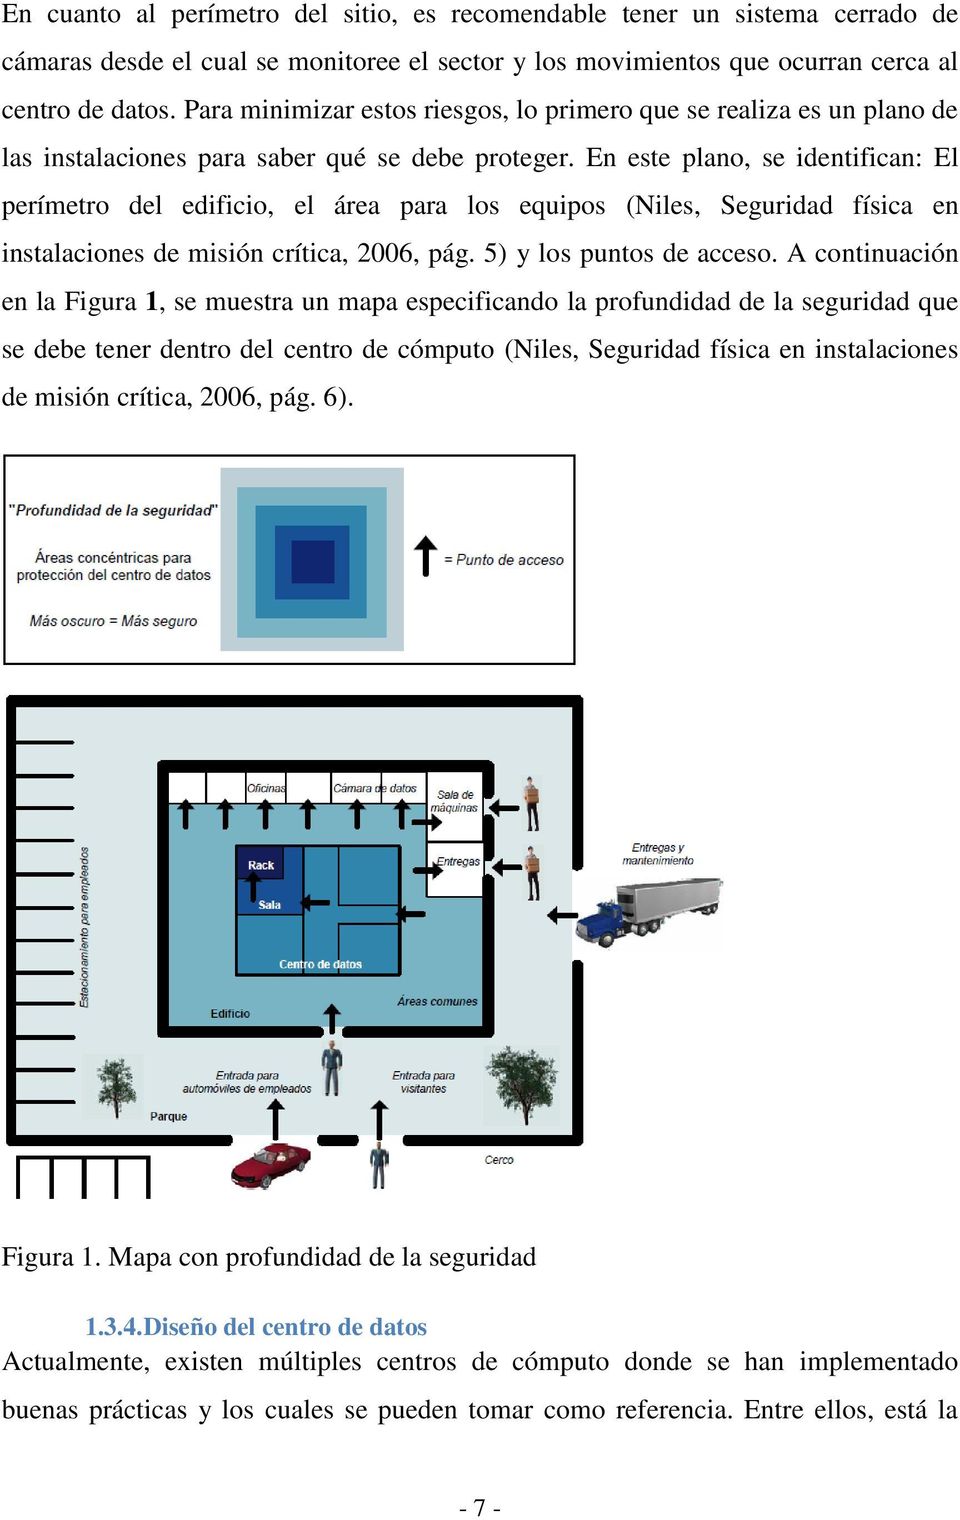 En este plano, se identifican: El perímetro del edificio, el área para los equipos (Niles, Seguridad física en instalaciones de misión crítica, 2006, pág. 5) y los puntos de acceso.